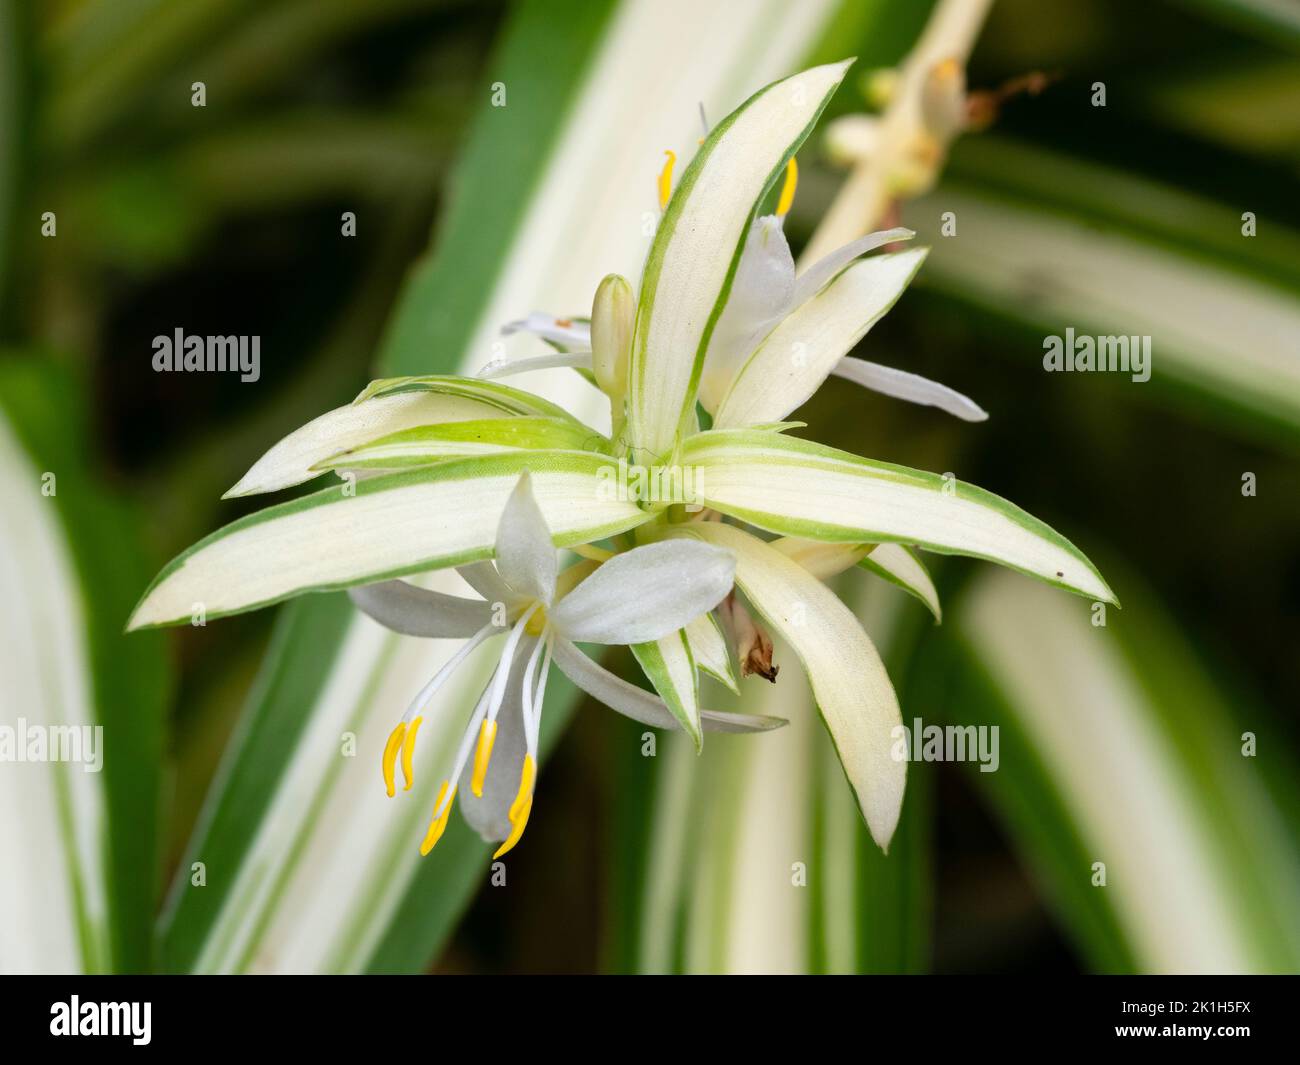 Fleur blanche et feuillage évergé variégé d'un décalage en développement de la plante d'araignée populaire Chlorophytum comosum 'Variegatum' Banque D'Images